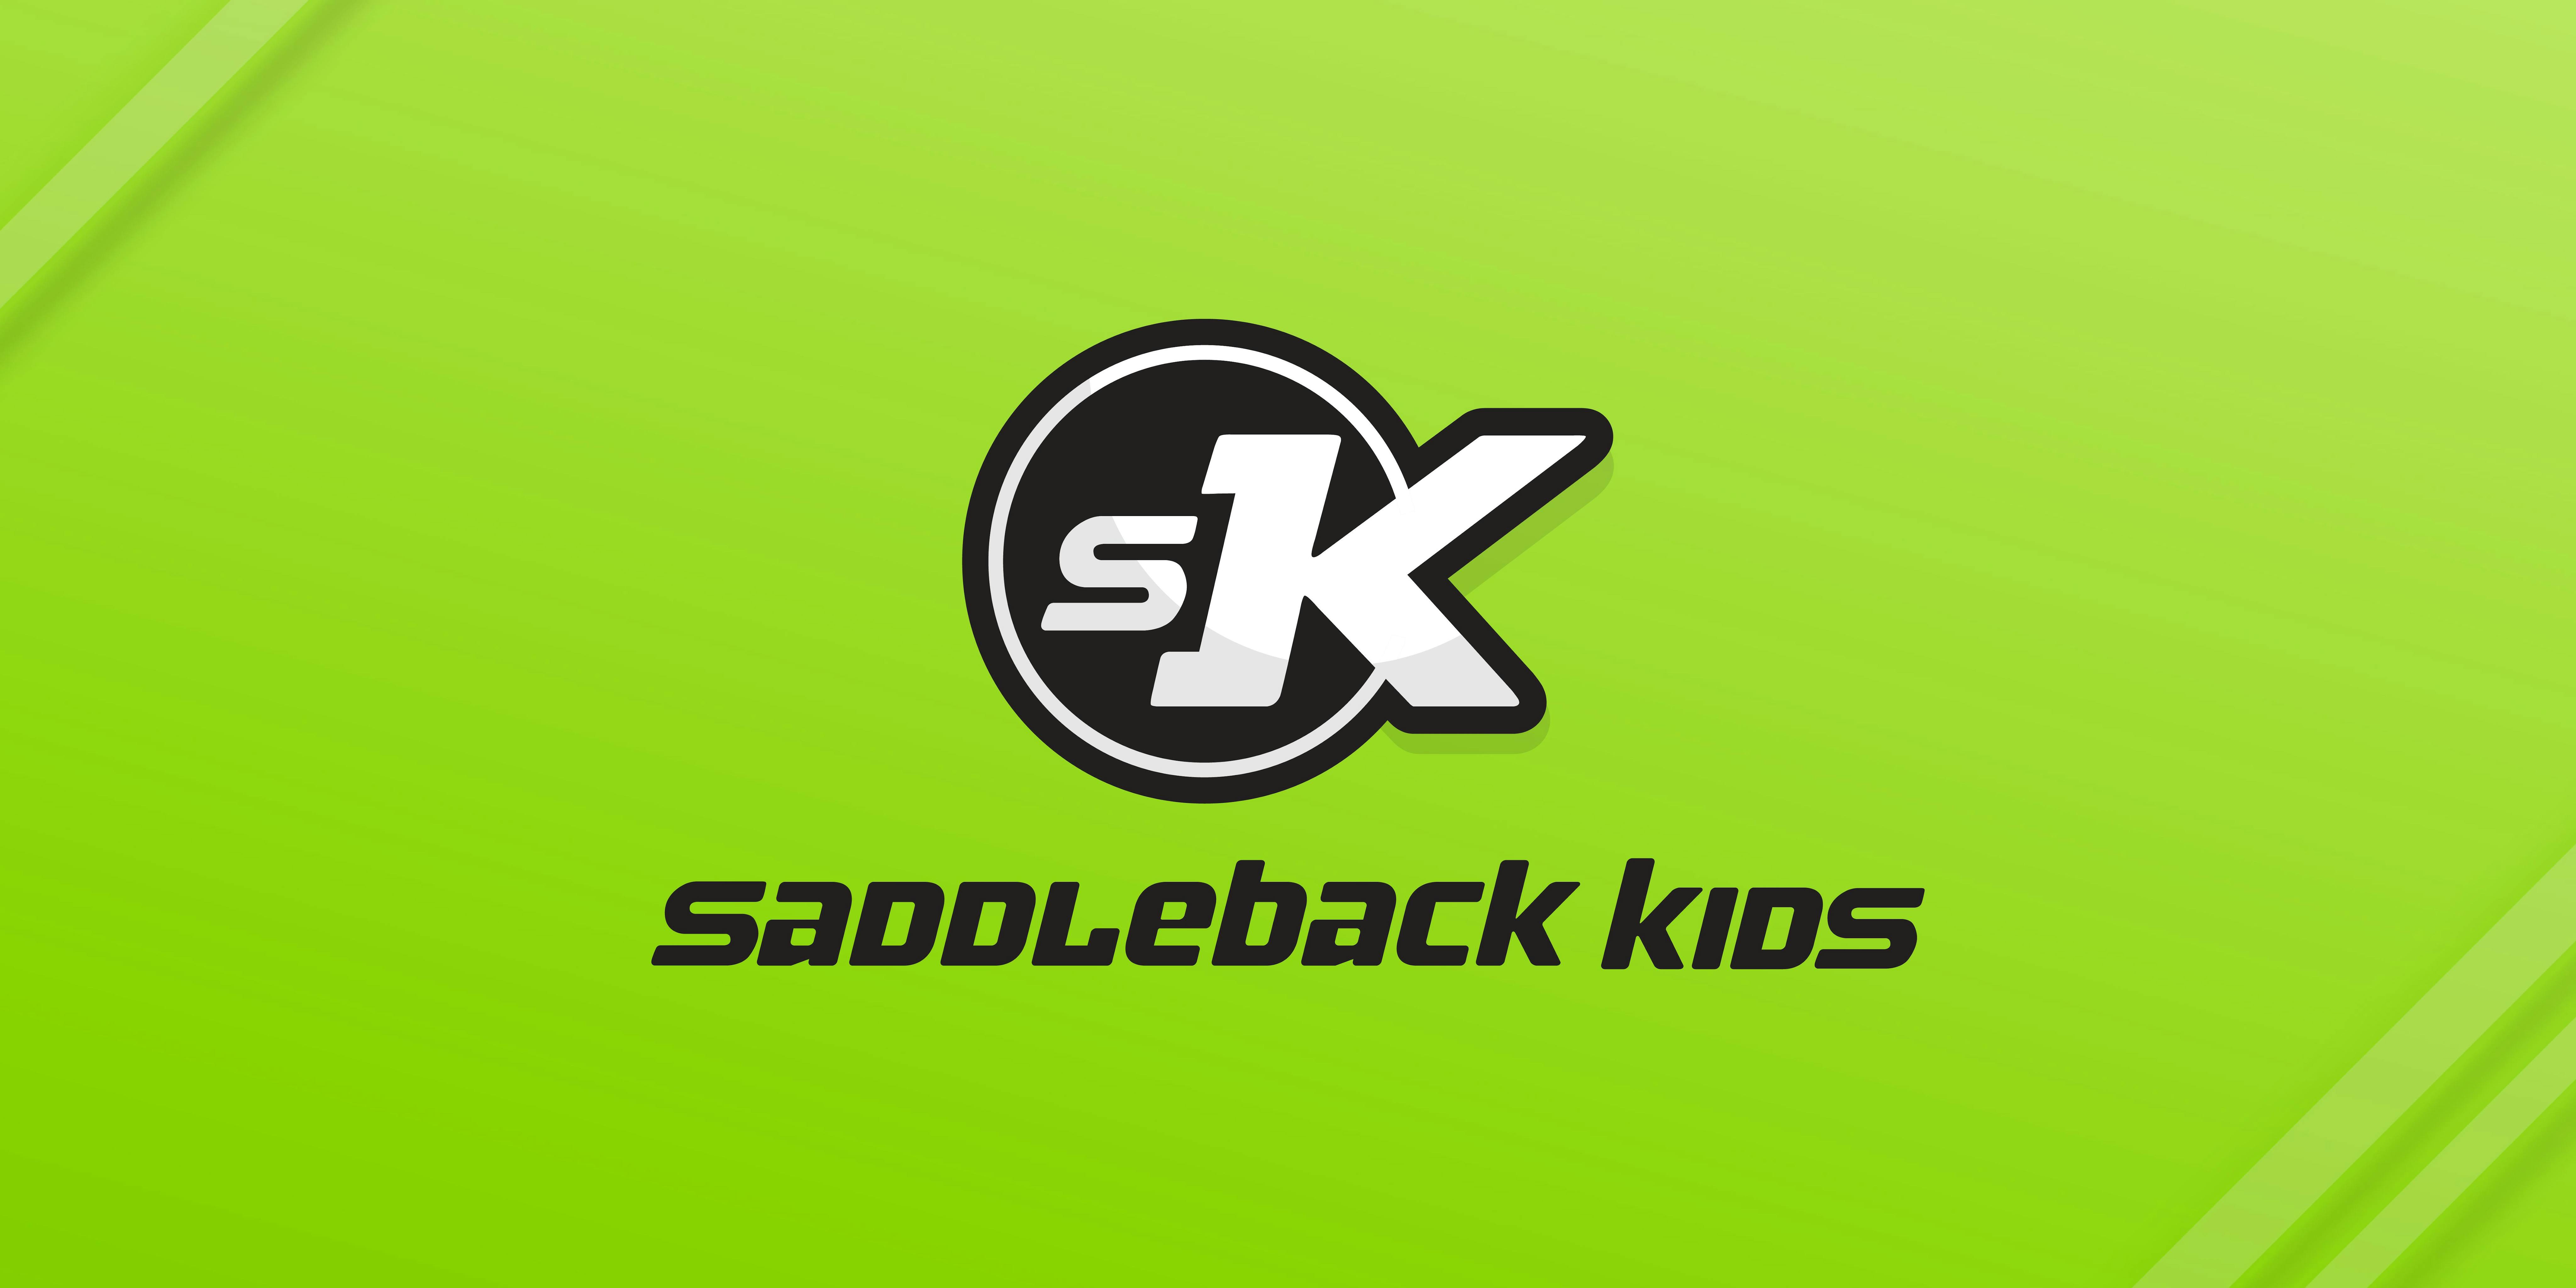 Saddleback Kids - The Main Event 2019 - Hong Kong